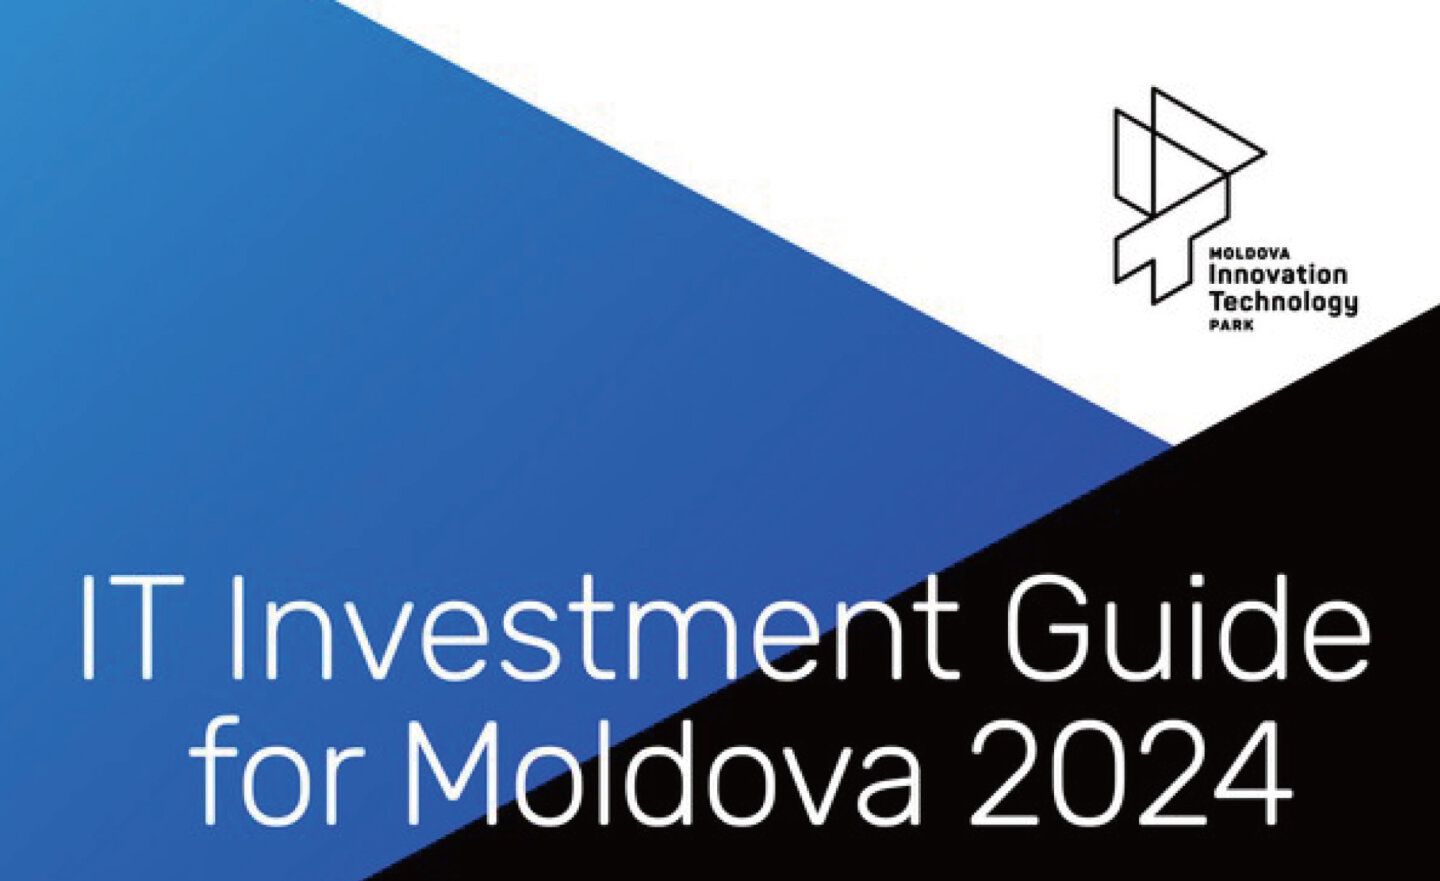 摩爾多瓦 Moldova 目標成為新興科技中心，發布《摩爾多瓦資訊科技業投資指南》